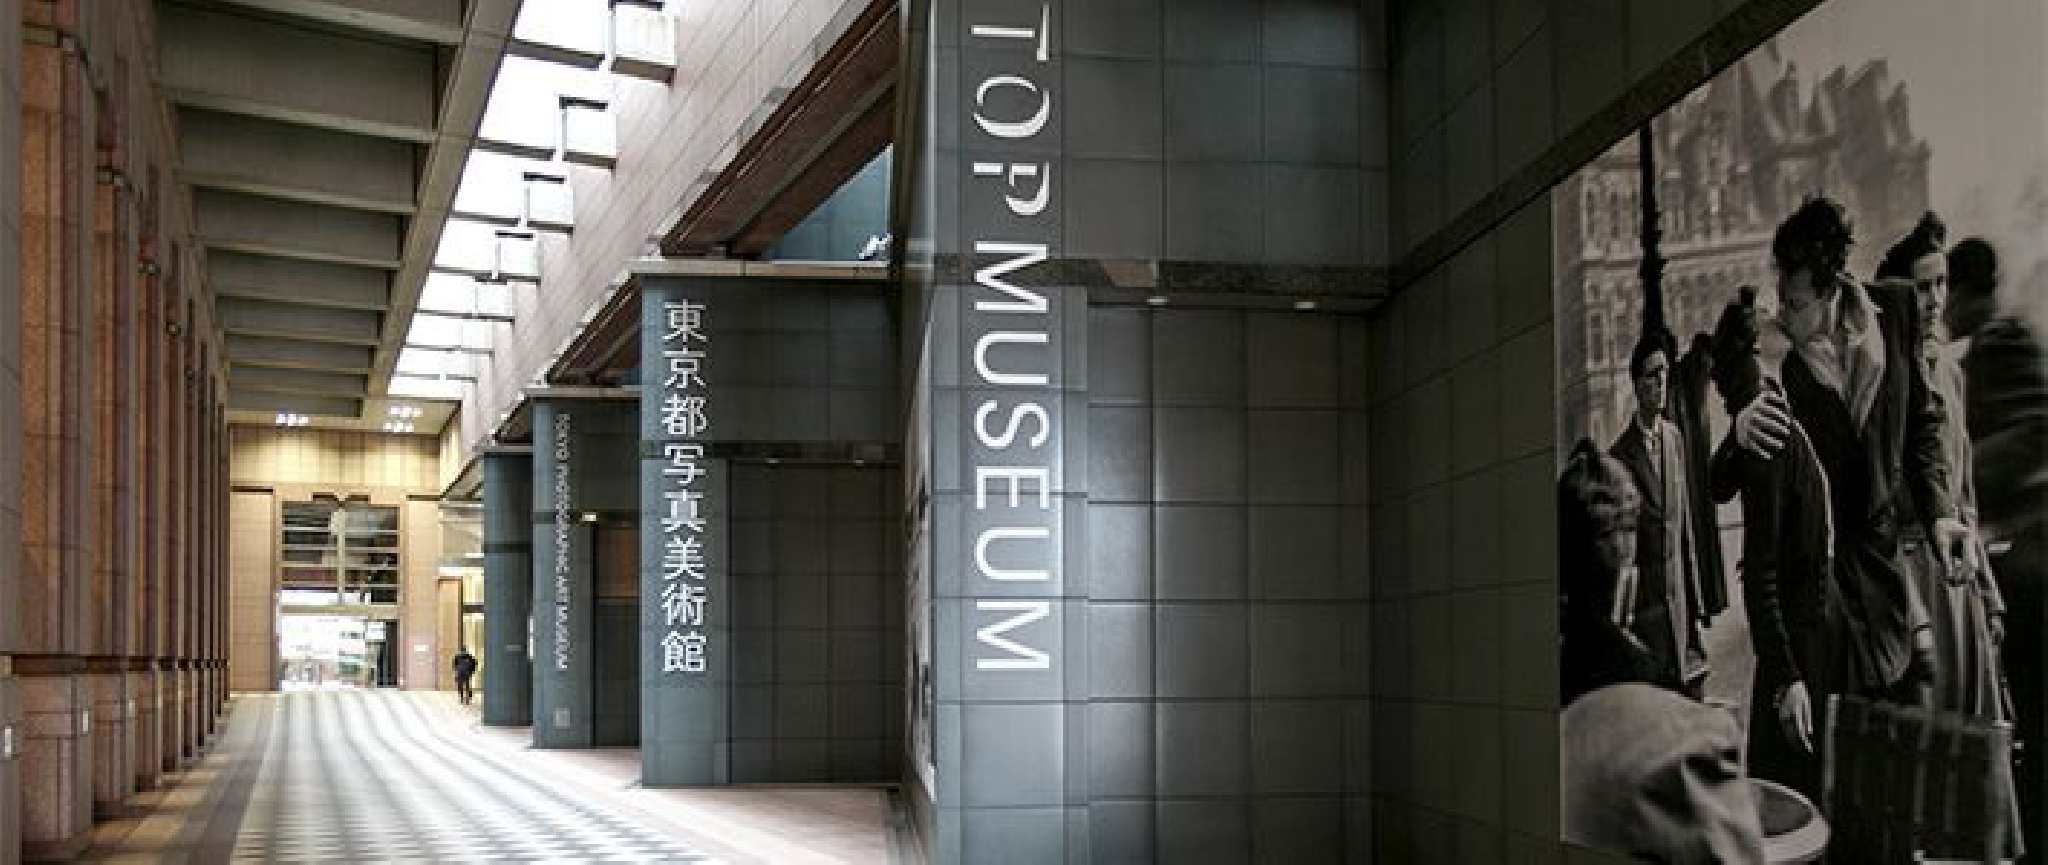 Đang tải tokyo-photographic-art-museum-bảo-tàng-nhiếp-ảnh.jpg…